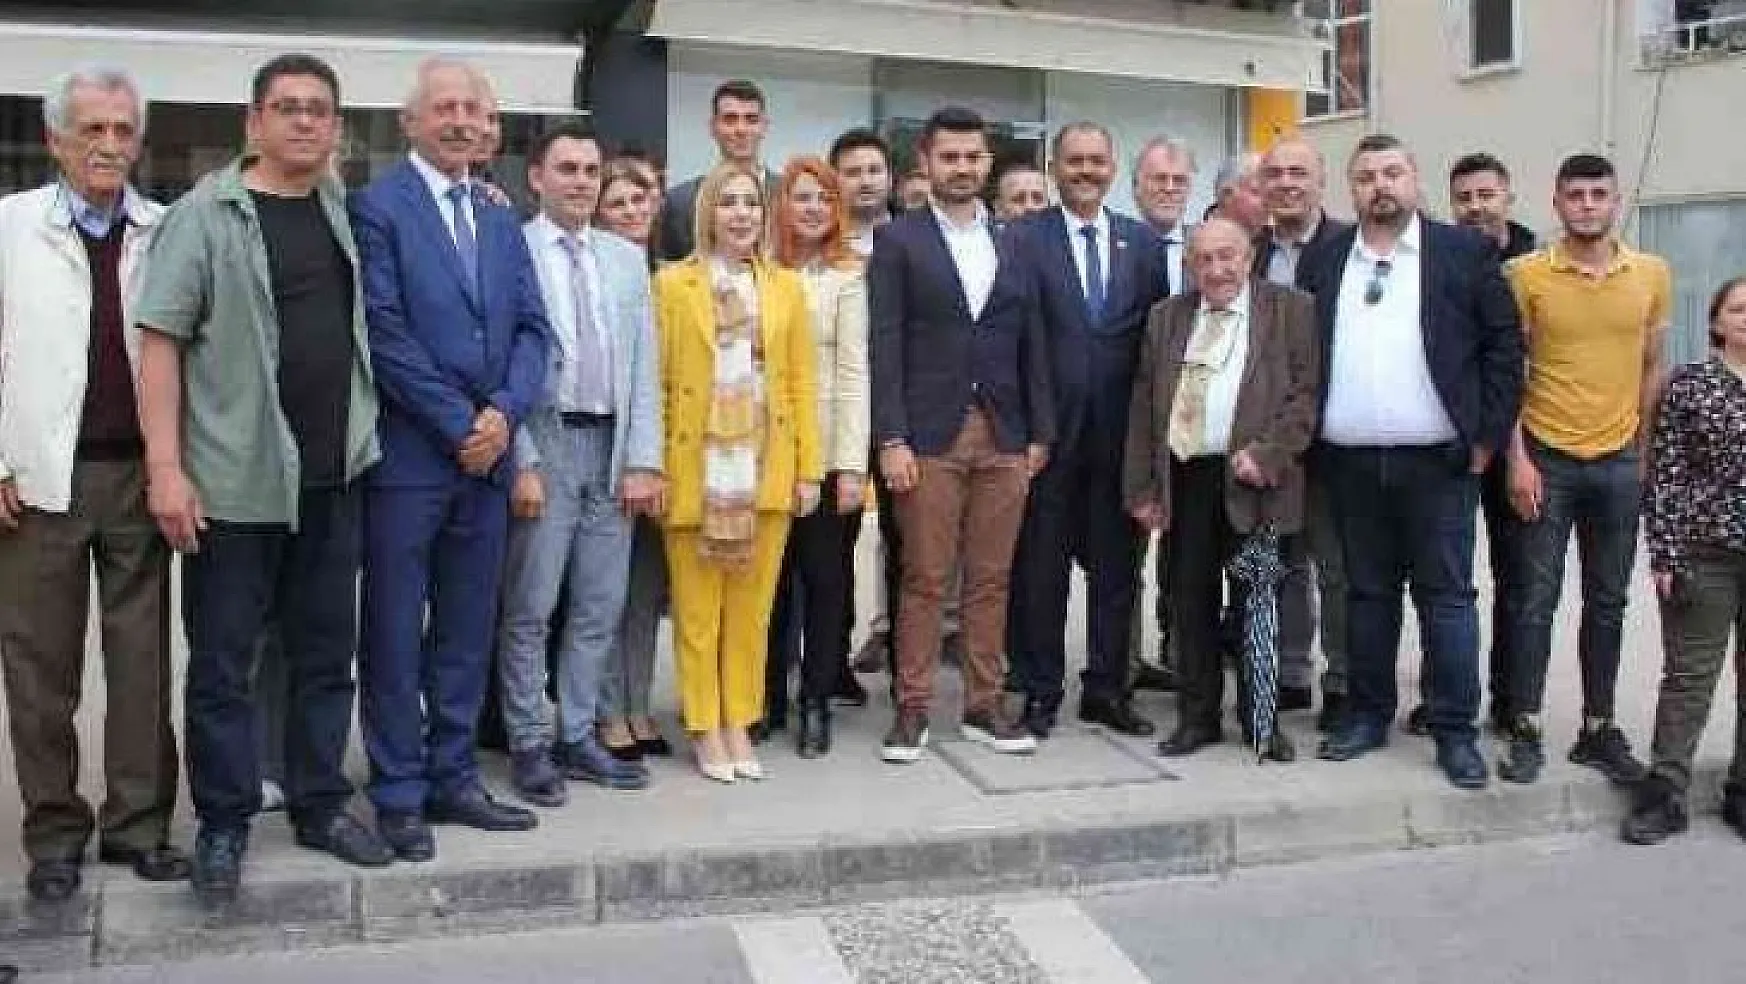 AK Parti Muğla Milletvekili Gökcan, Marmarisli partililer ile bayramlaştı